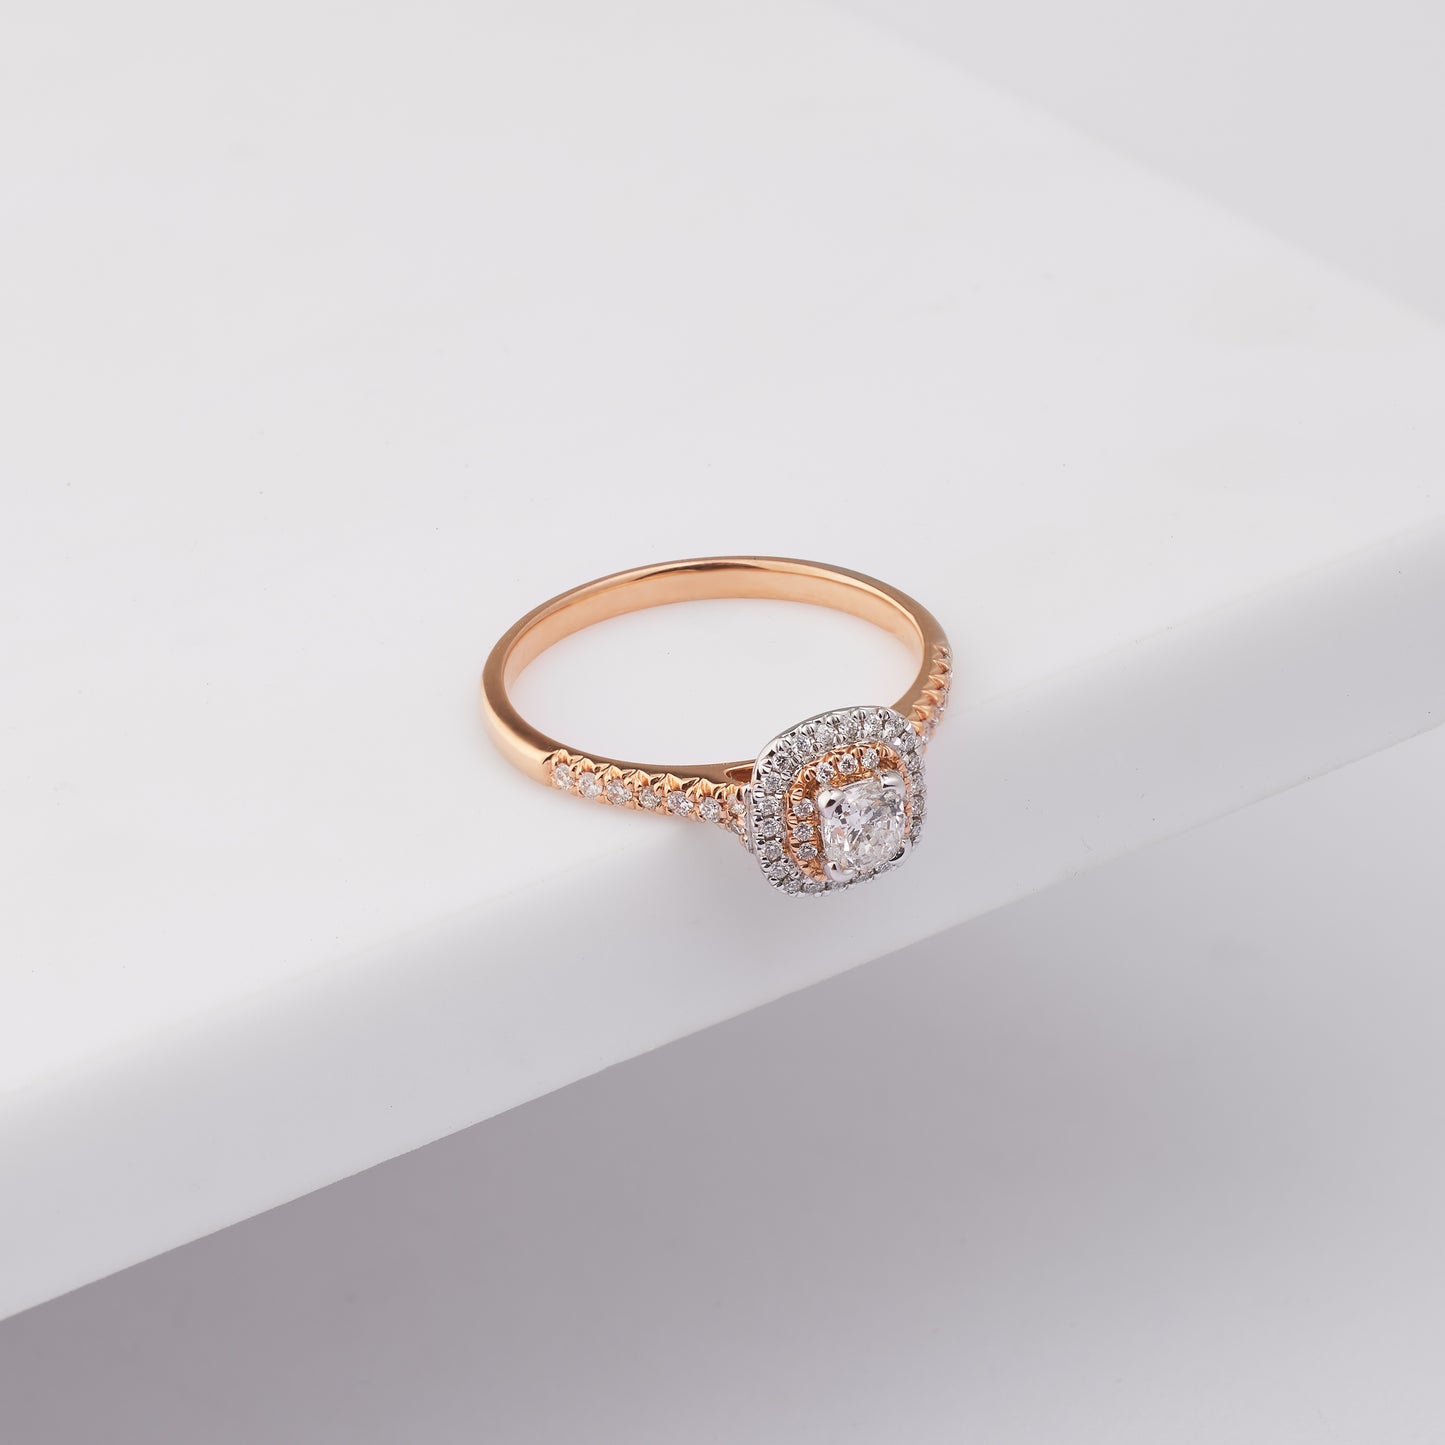 18K Rose and White Gold Cushion Diamond Halo Engagement Ring 0.49tdw